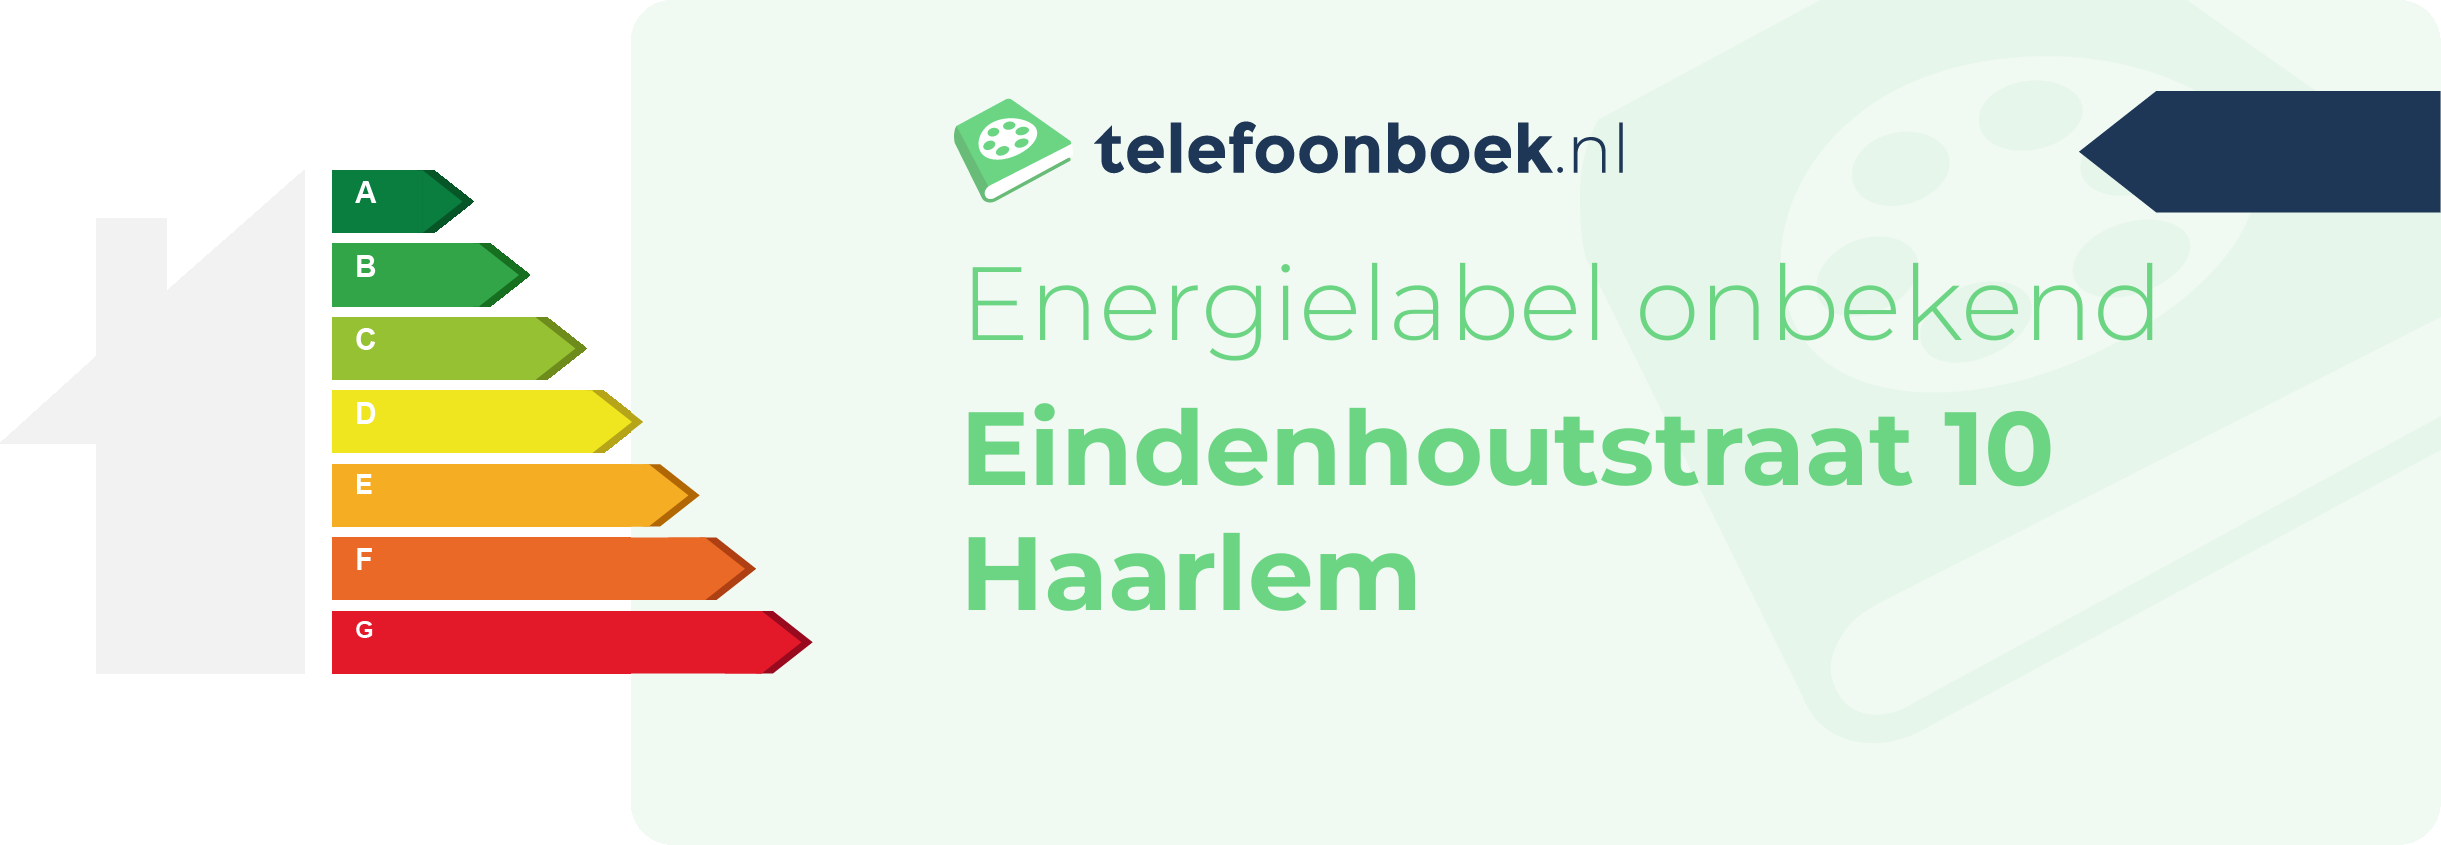 Energielabel Eindenhoutstraat 10 Haarlem